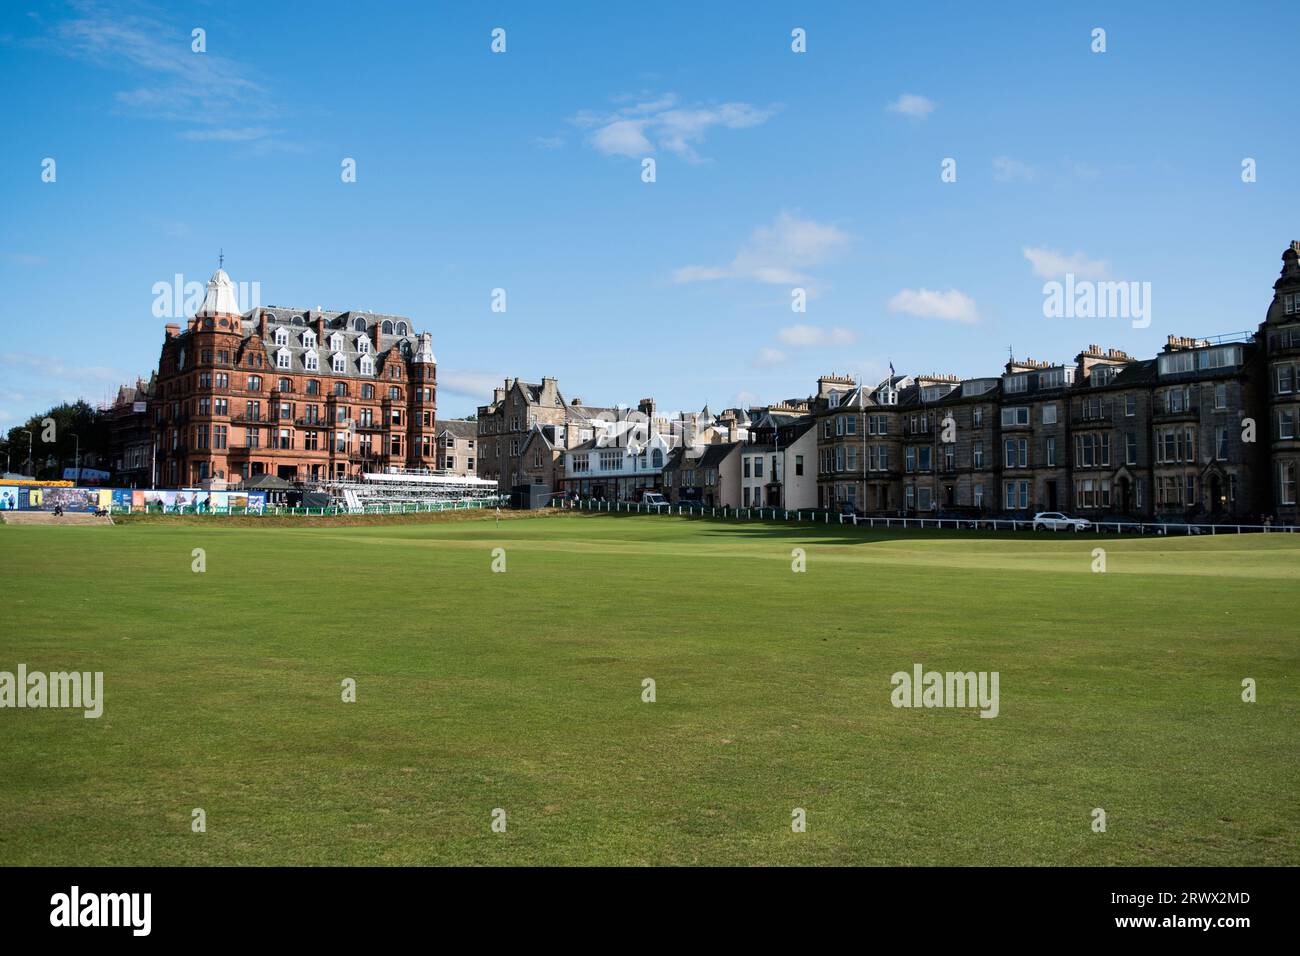 Parcours de golf de St Andrews - connu sous le nom de Old course dans la ville balnéaire populaire de Saint Andrews au nord-est d'Édimbourg, en Écosse. Banque D'Images